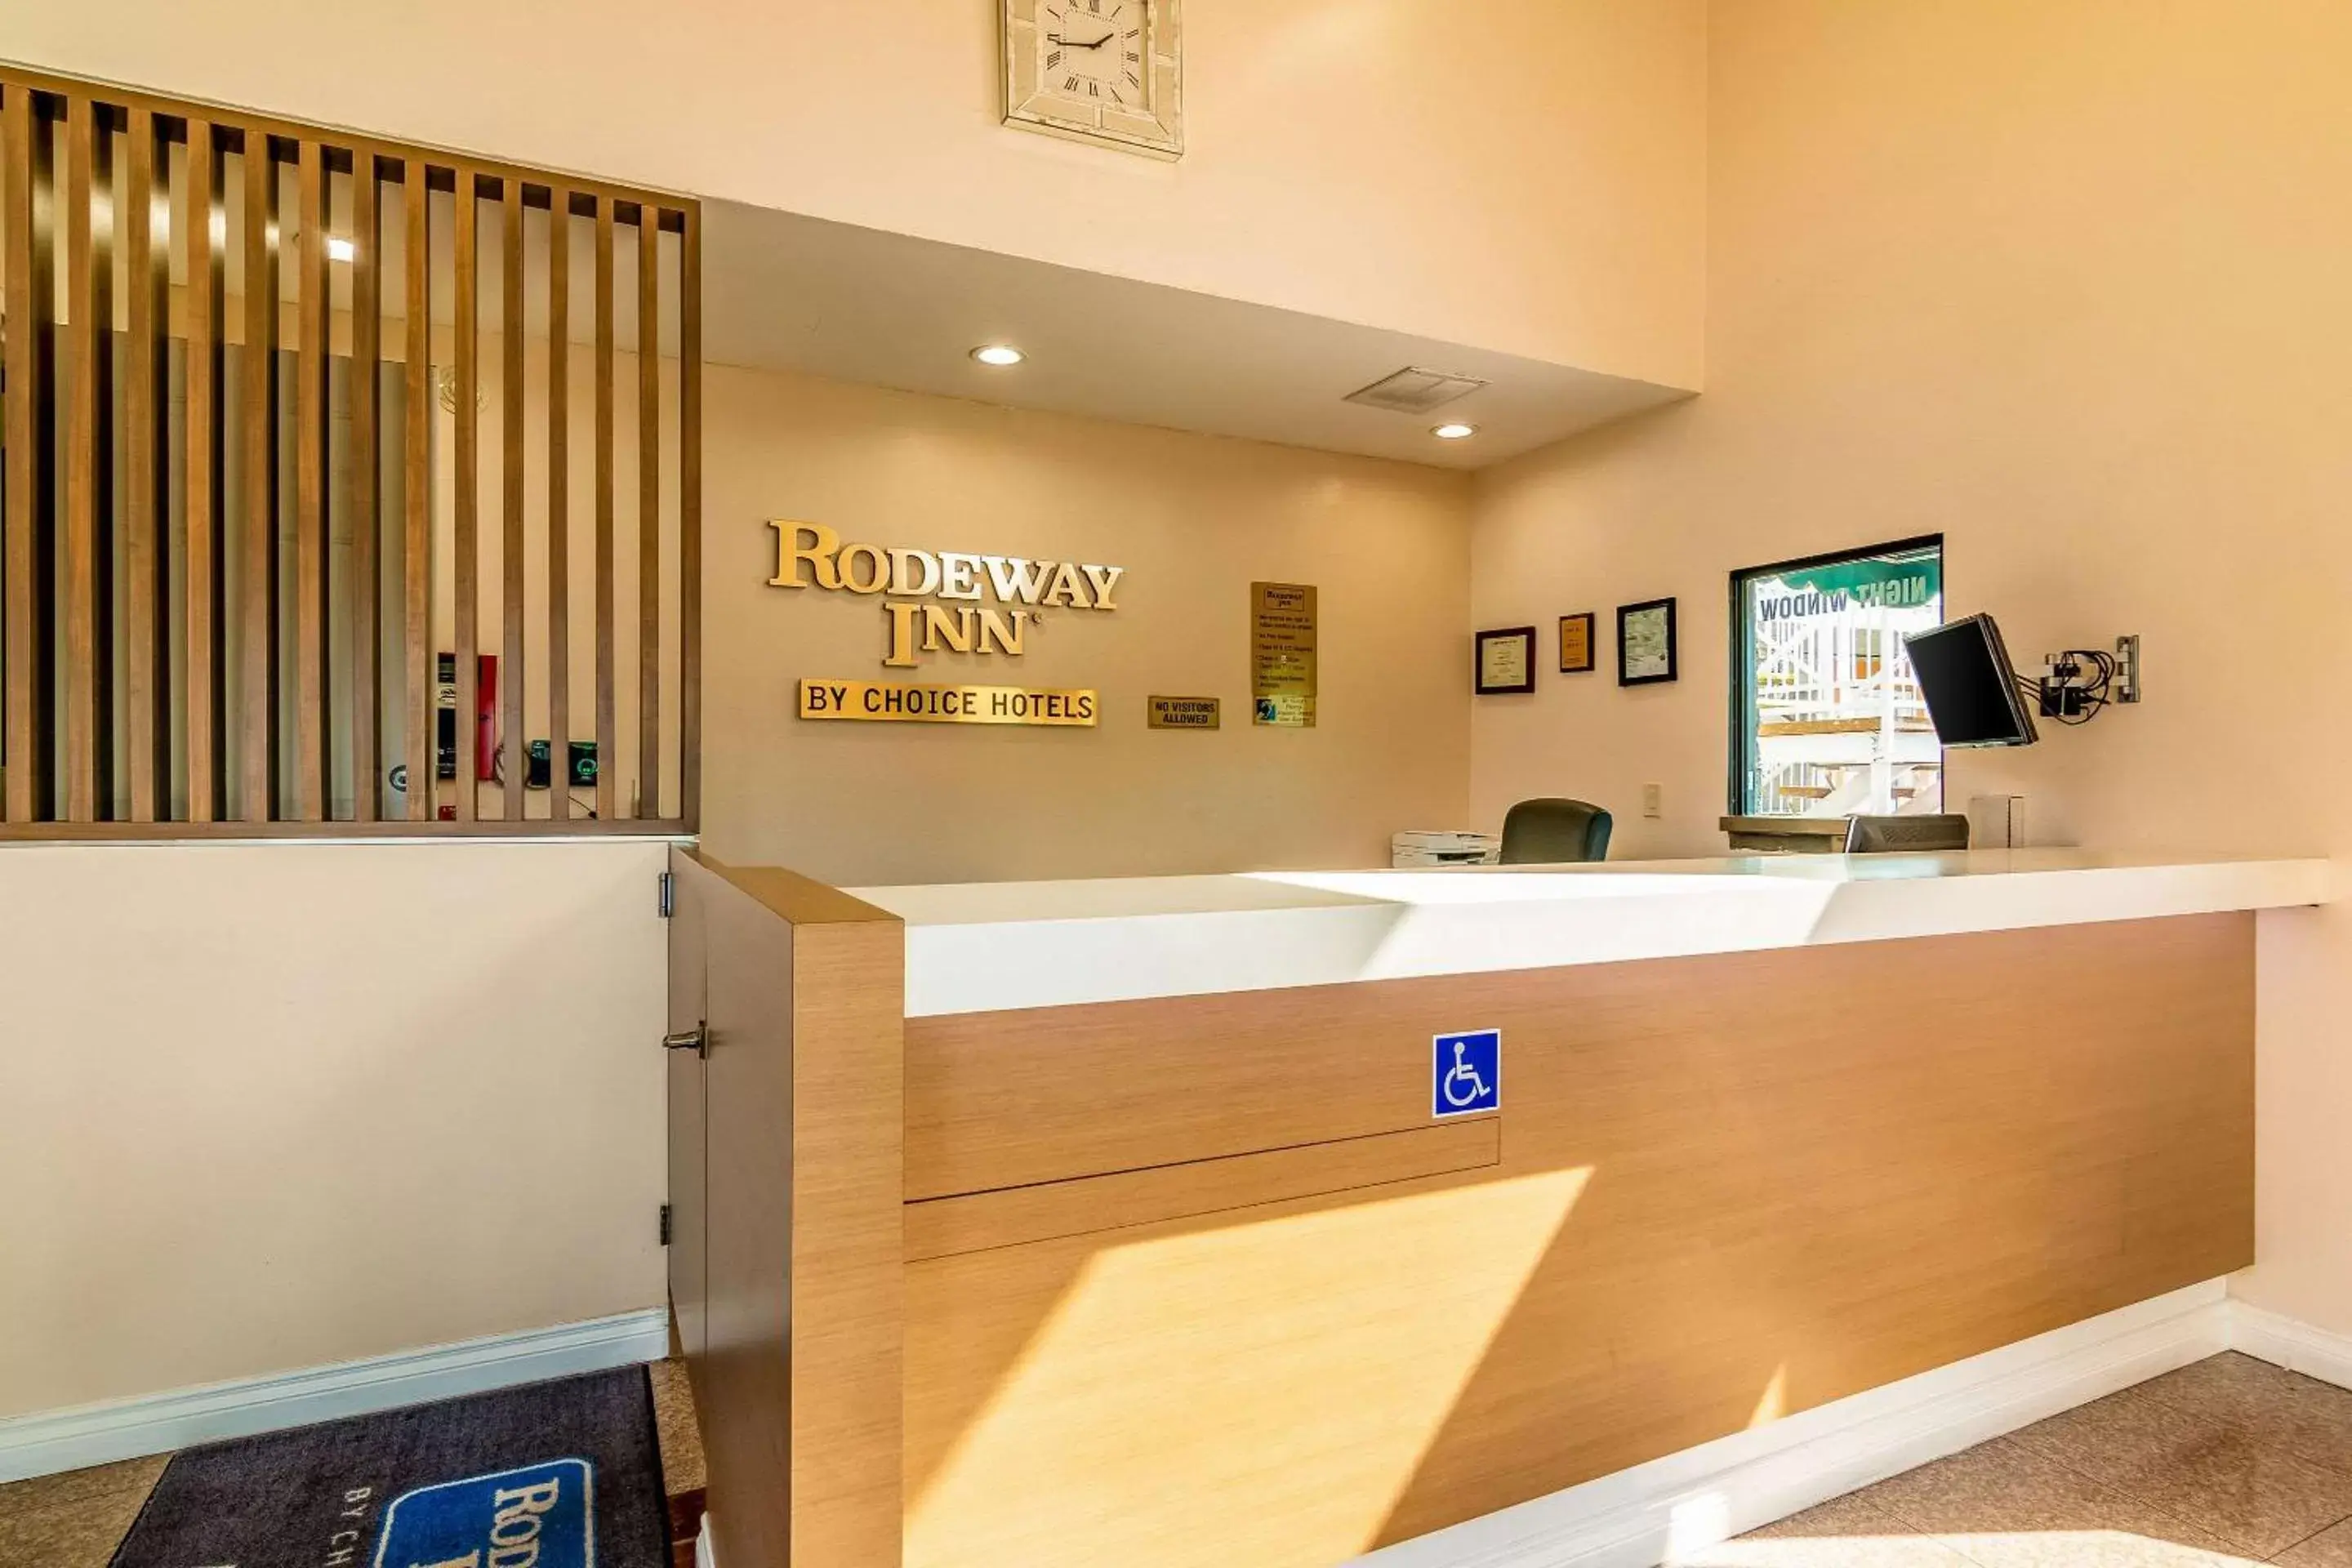 Lobby or reception, Lobby/Reception in Rodeway Inn Artesia Cerritos